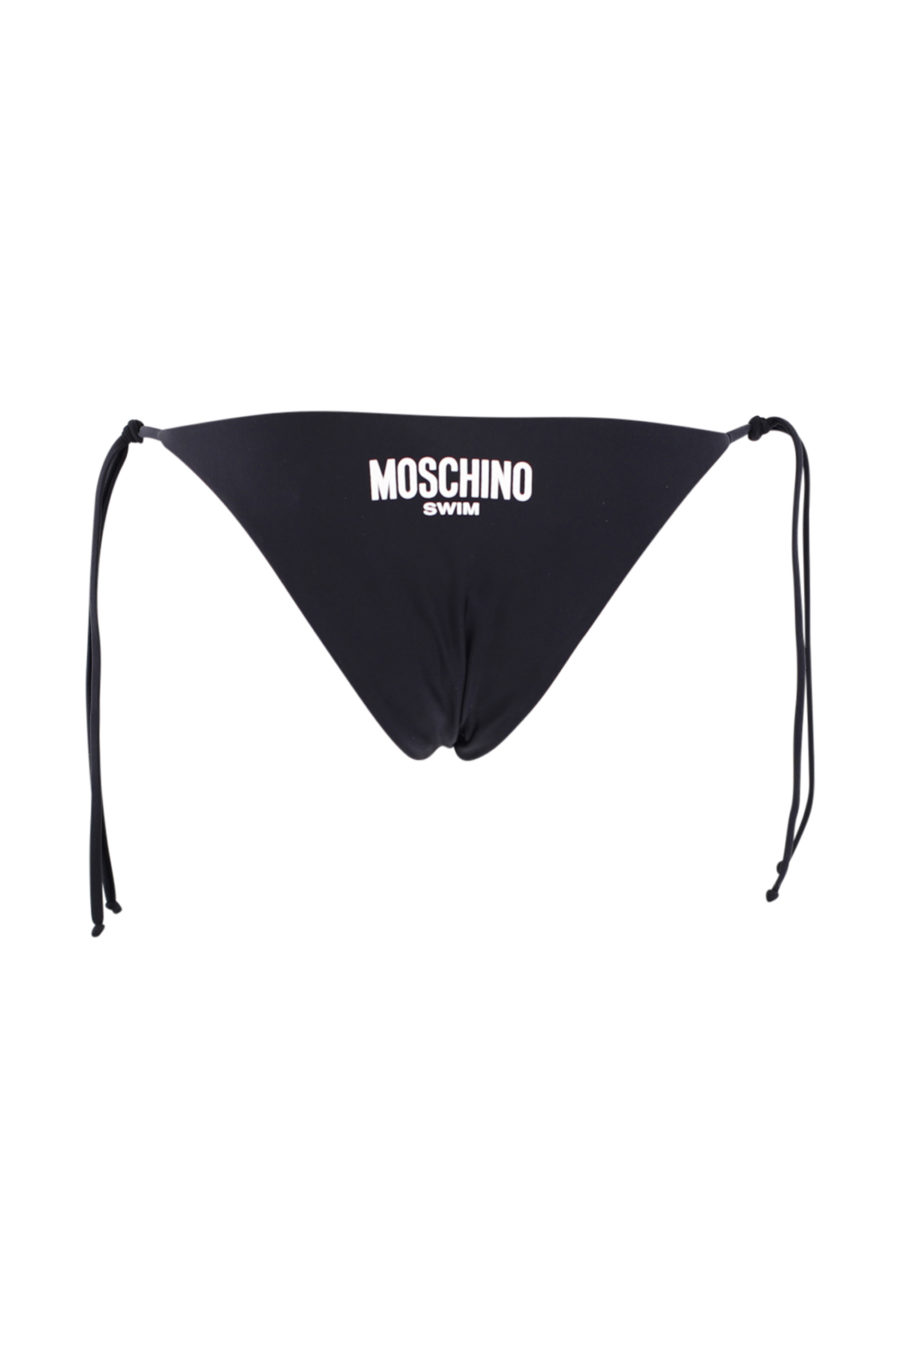 Schwarzer Badeanzug mit Schnürsenkeln und Logo - IMG 0918